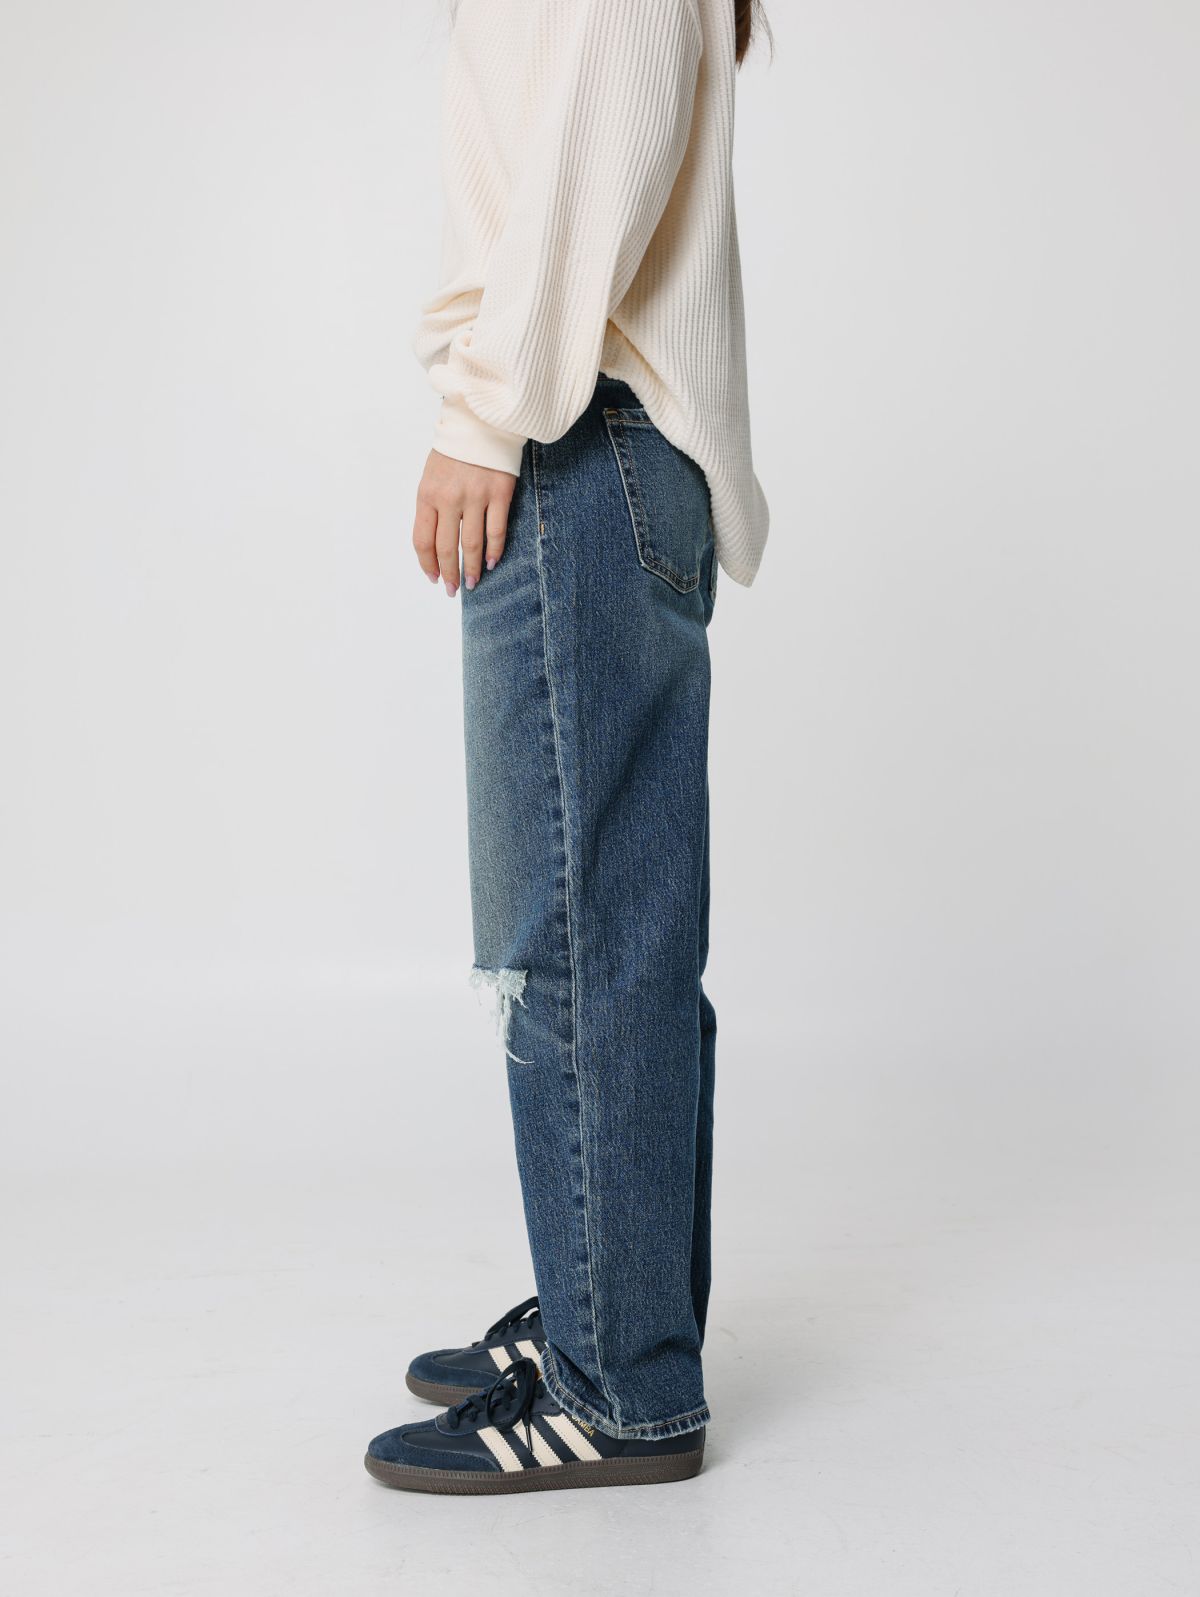  מכנסי ג'ינס בויפרנד של OLD NAVY